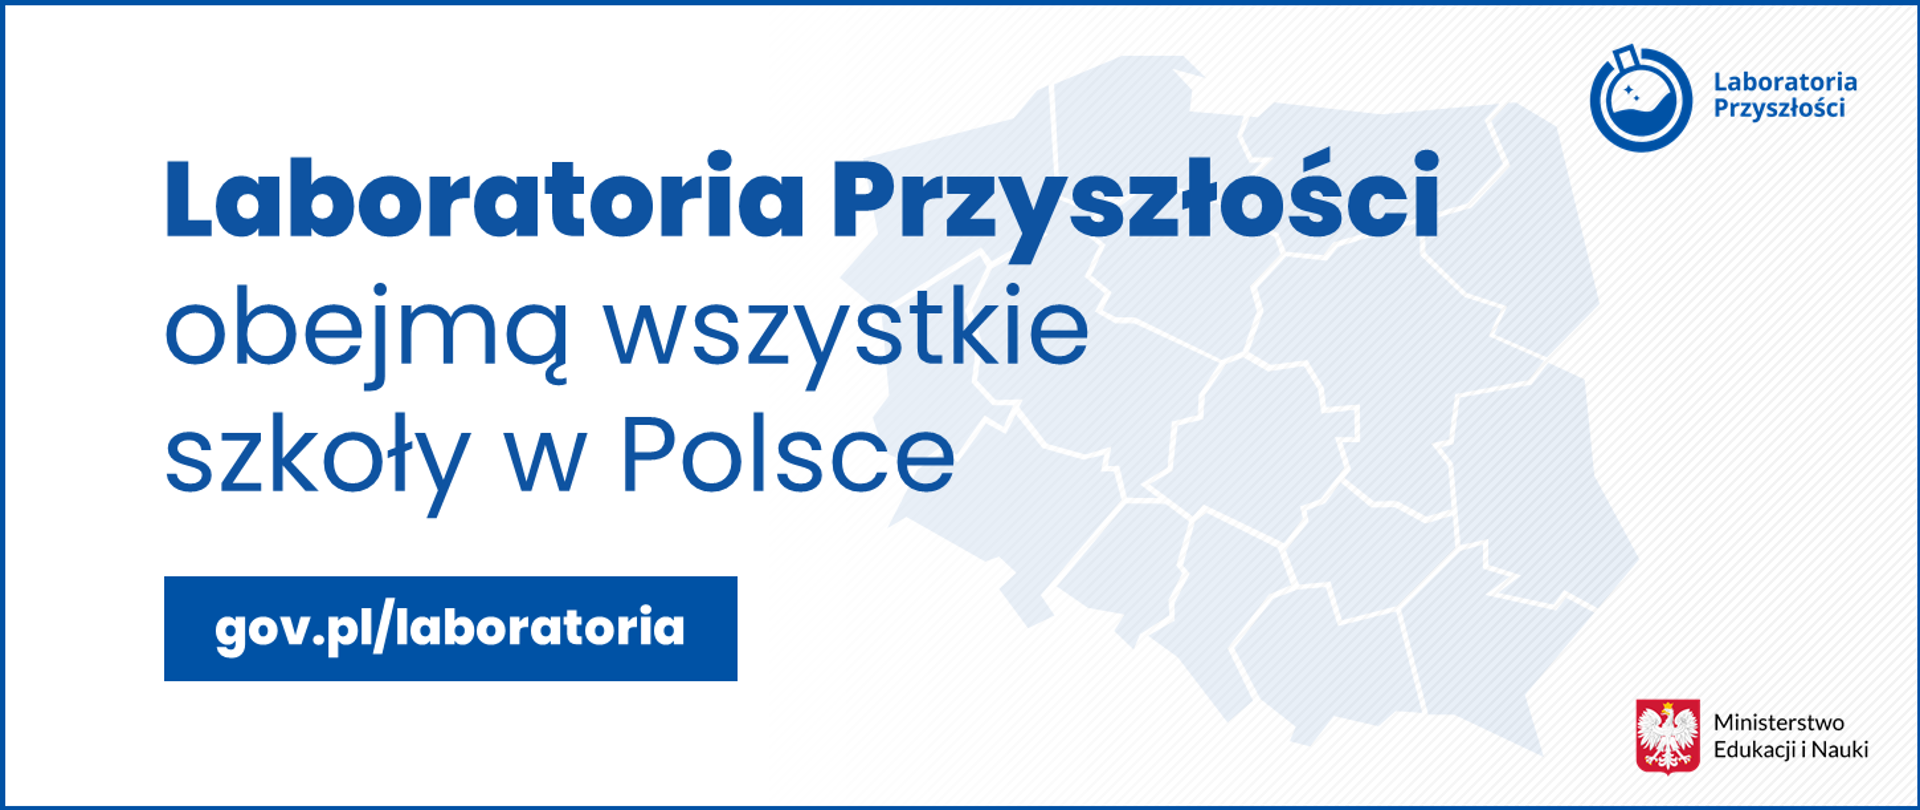 Grafika z mapą Polski i tekstem: Laboratoria Przyszłości obejmą wszystkie szkoły w Polsce - gov.pl/laboratoria.